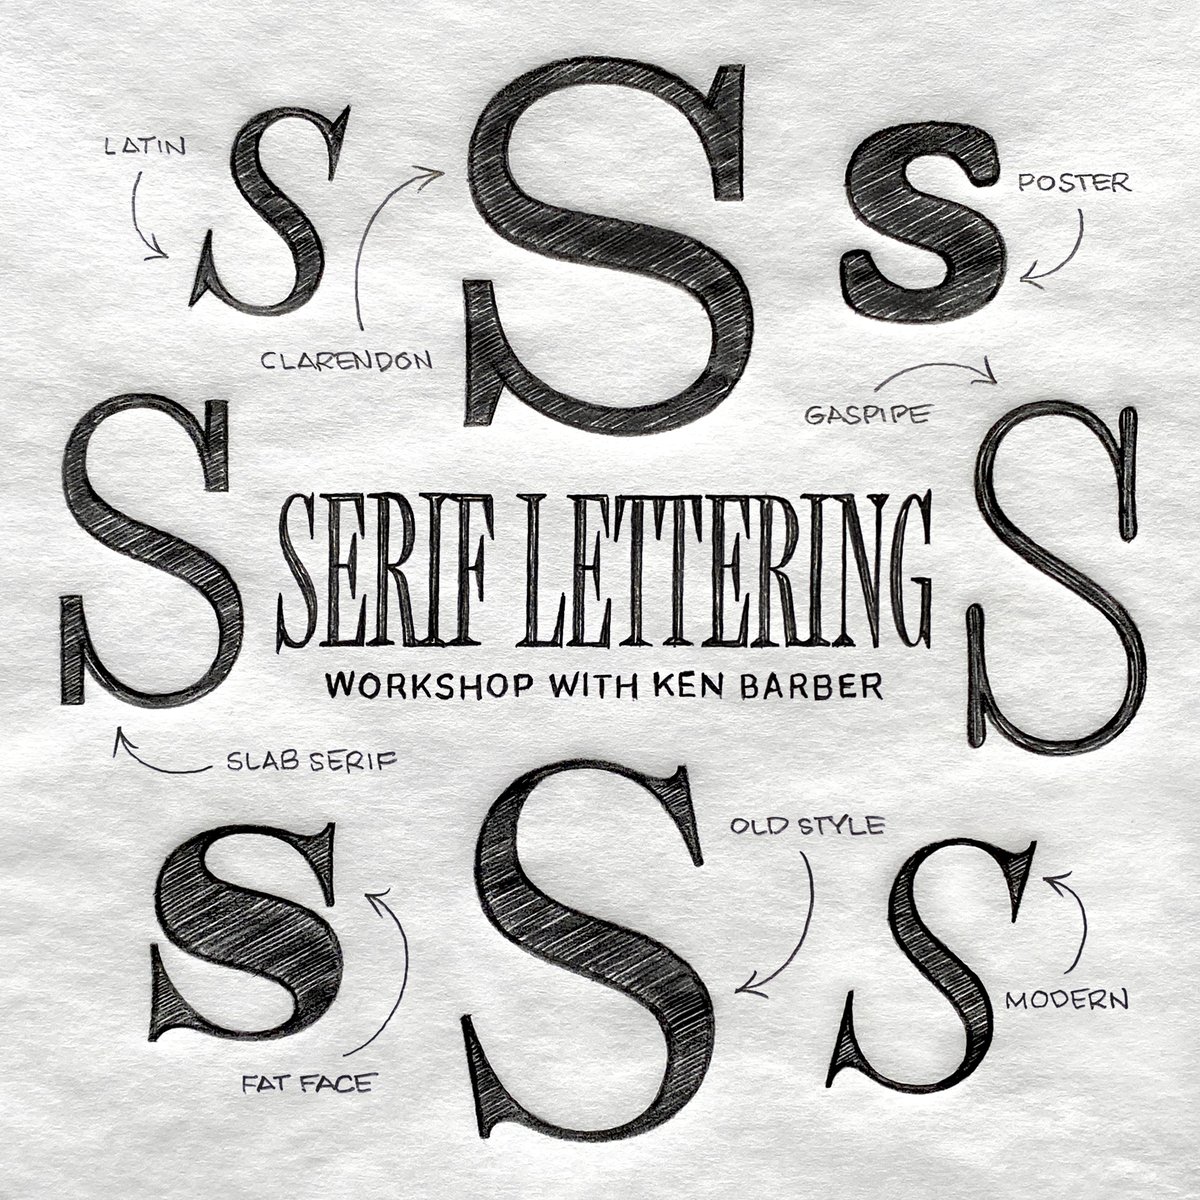 Level up your lettering skills in my Mastering Serif Letterforms online workshop on June 10! Register today: eventbrite.com/e/mastering-se…